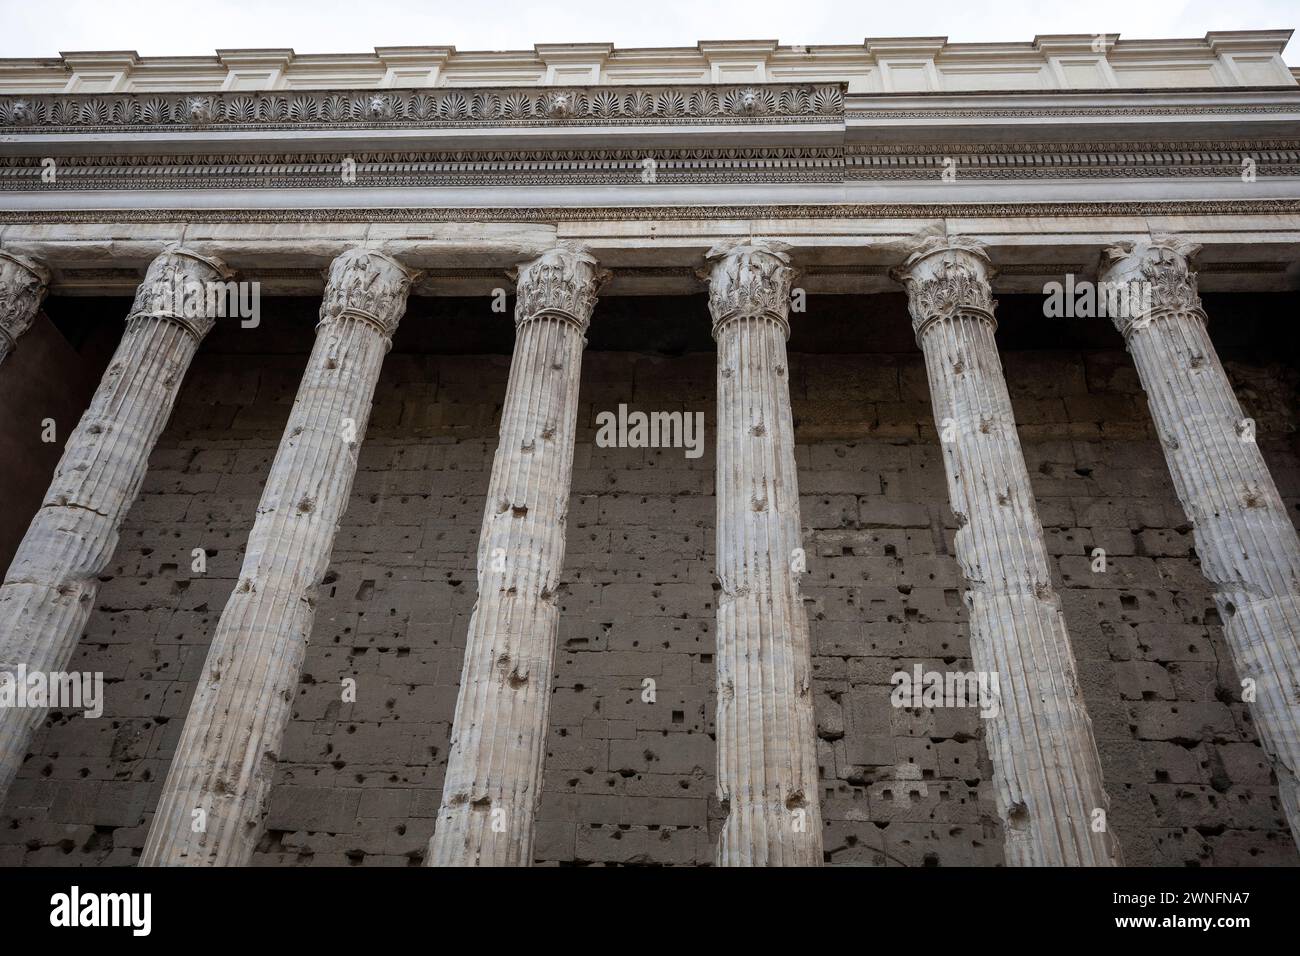 Die antike Fassade des Tempio di Adriano (Adrianentempel) im historischen Zentrum von Rom, Italien. Perspektive der antiken Kolonnade im Foregr Stockfoto